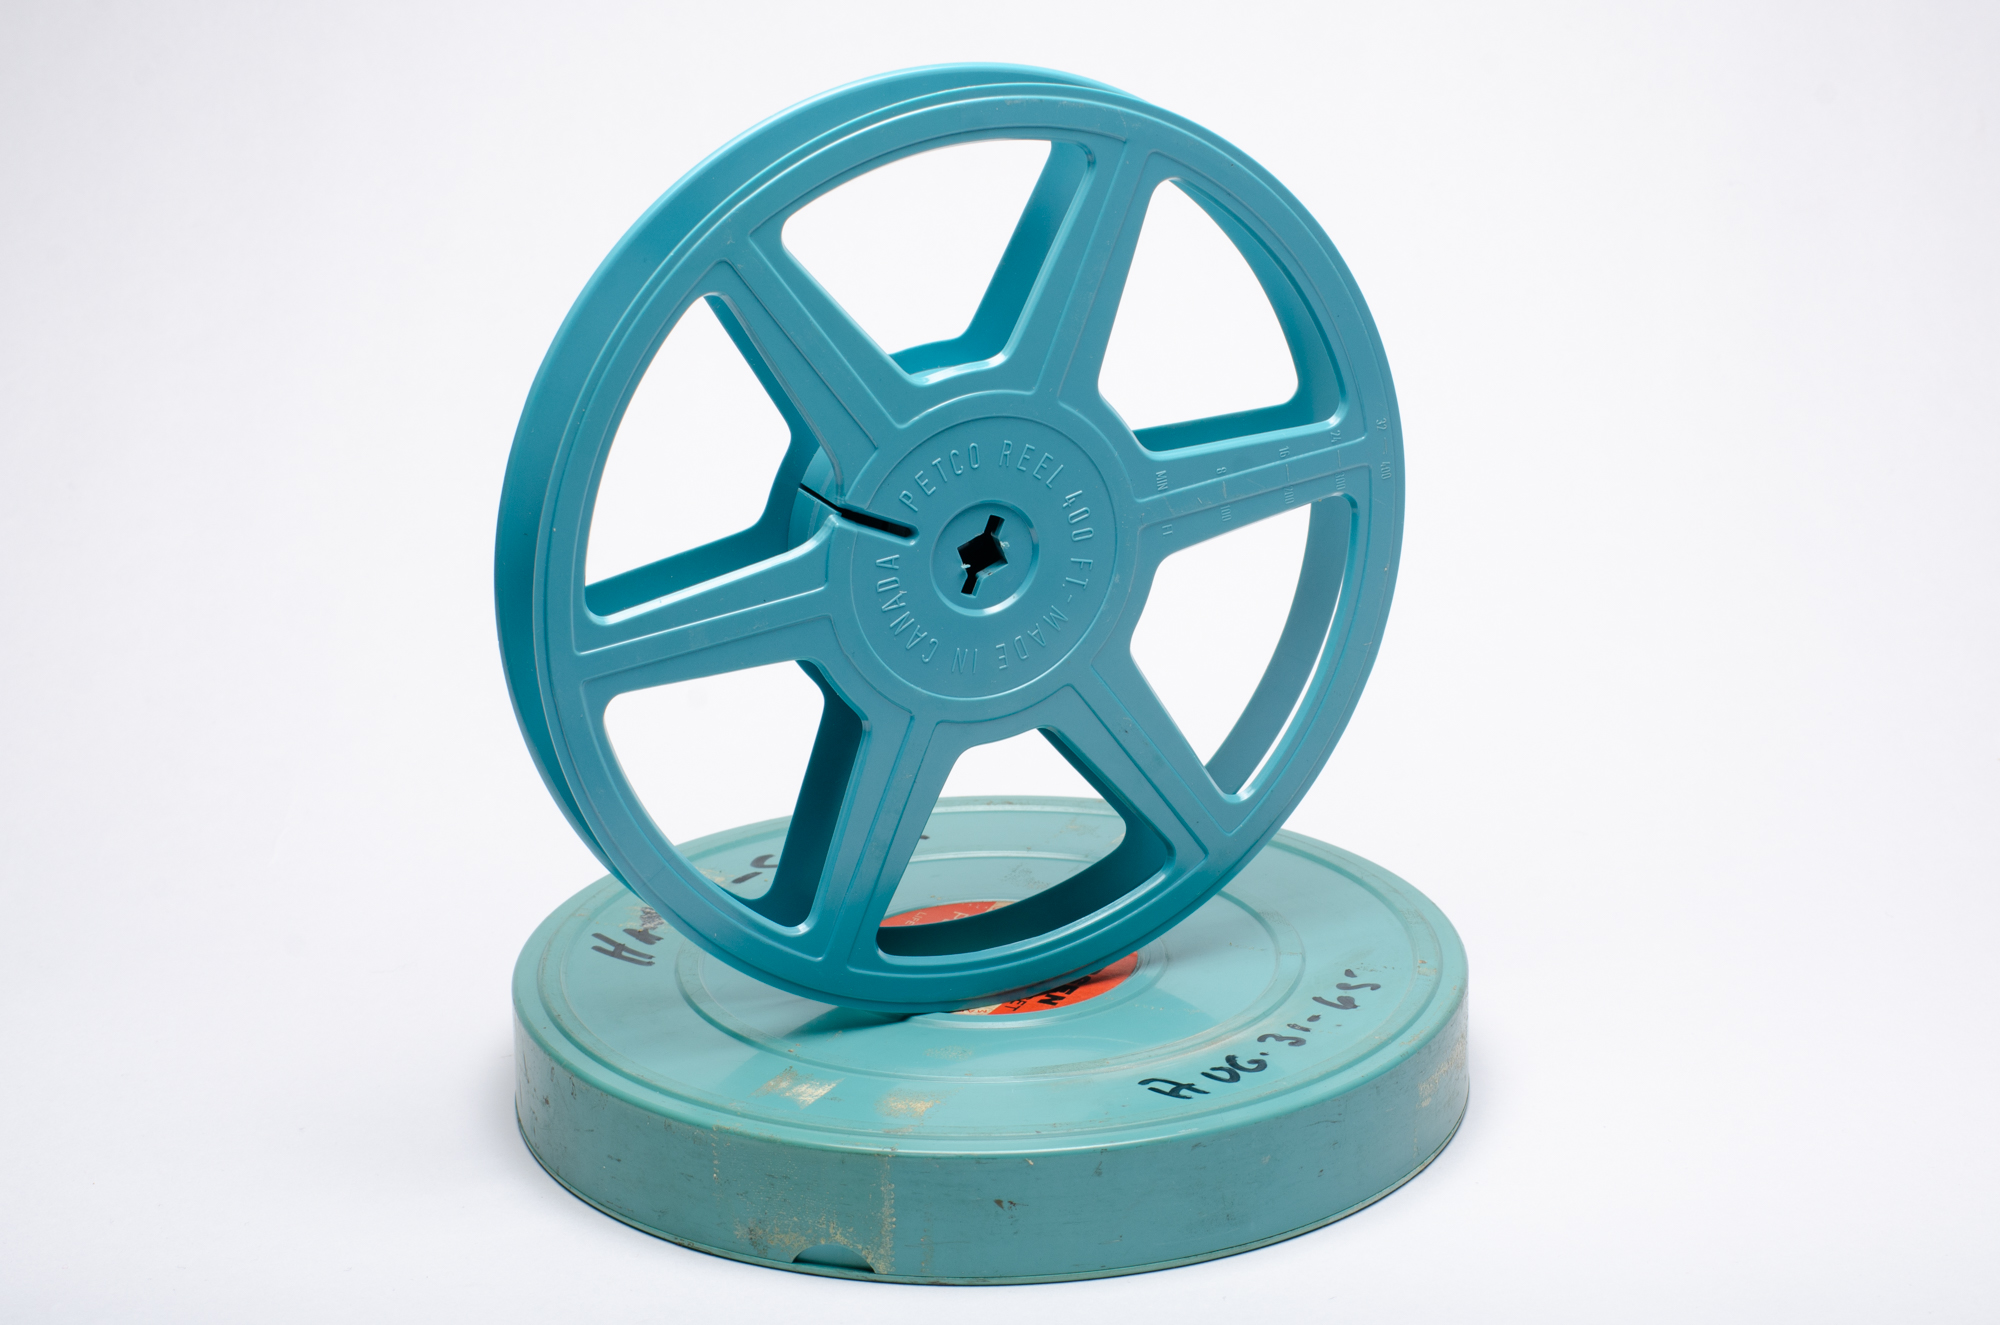 Midcentury Modern 16mm Film Reel, 7 400 Foot Vintage Aluminum Movie Reel -   Canada